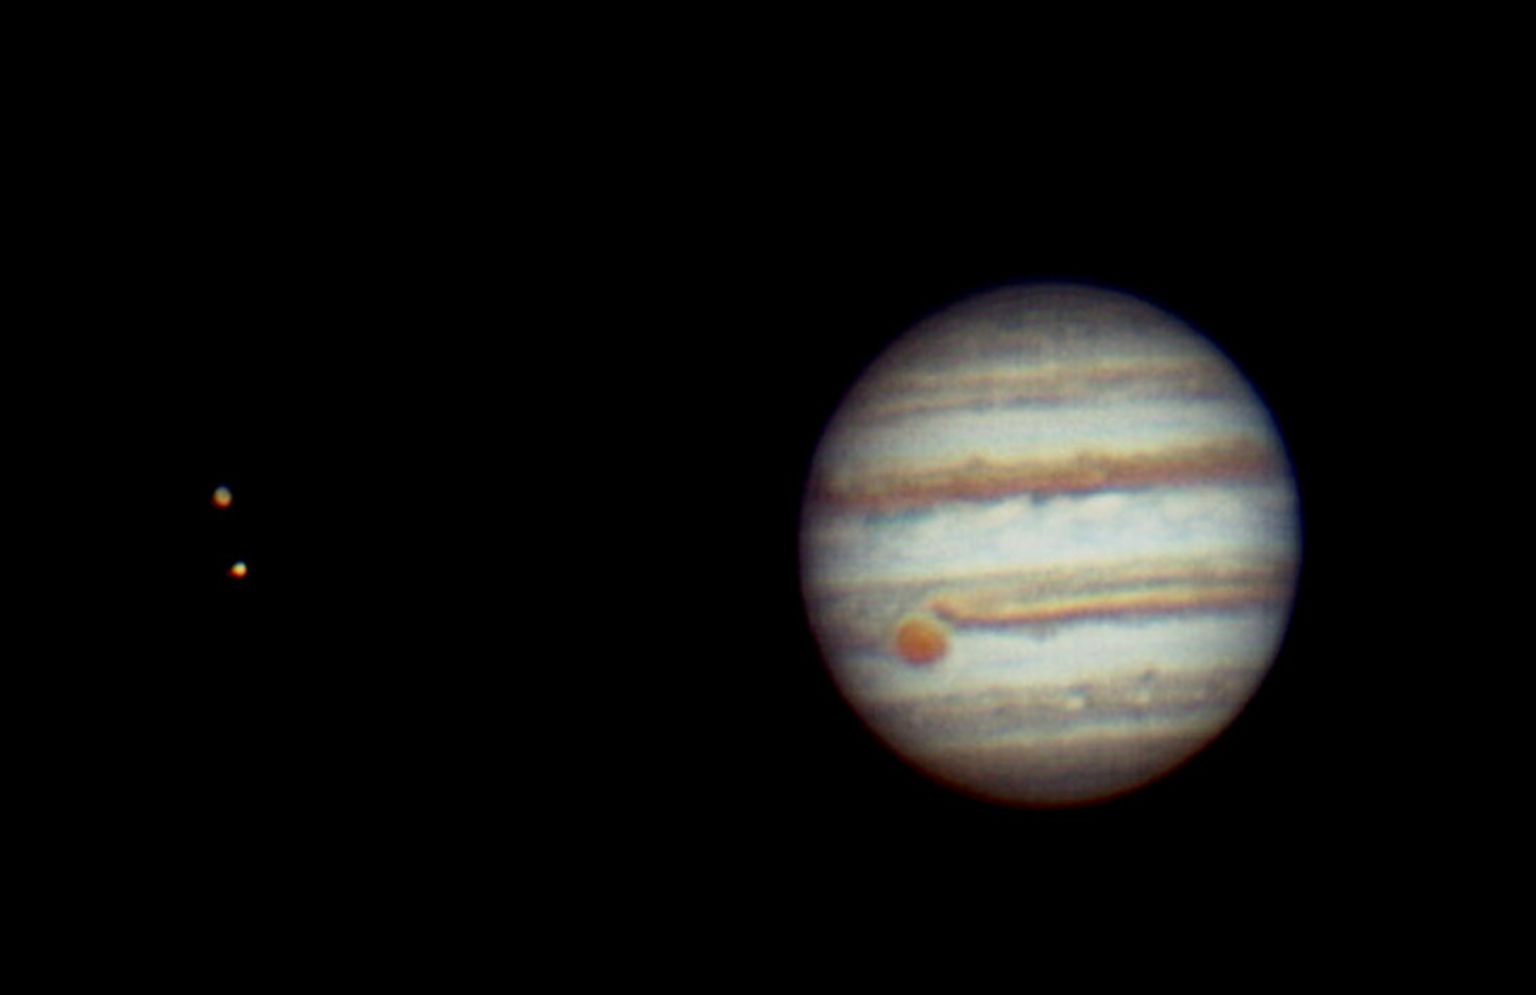 Jupiteri võib üsna hästi näha ka peale vastasseisu möödumist